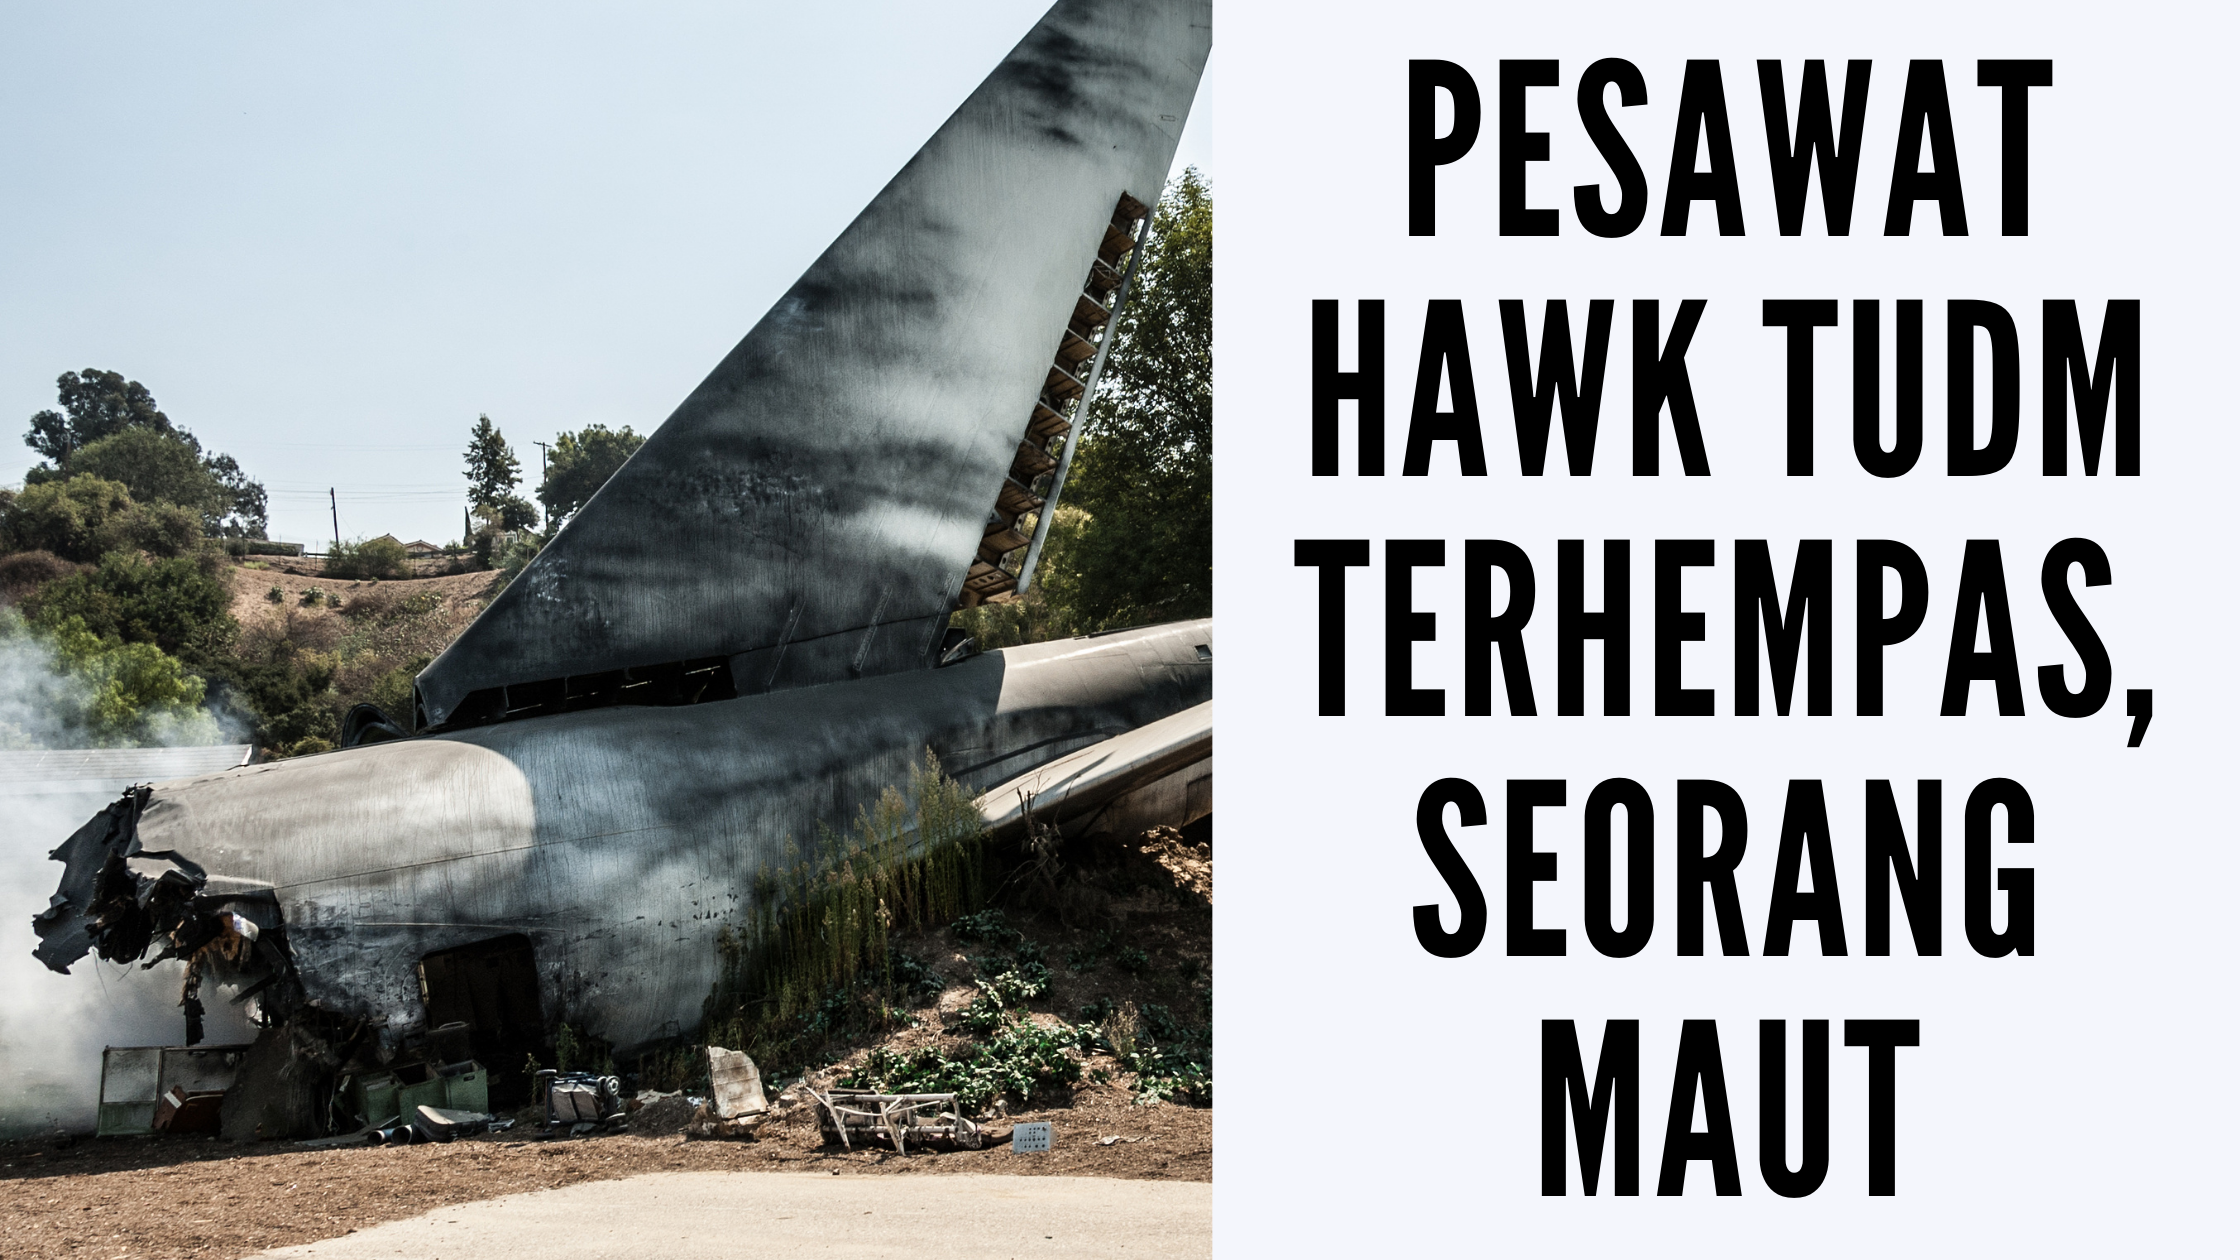 Pesawat Hawk TUDM Terhempas